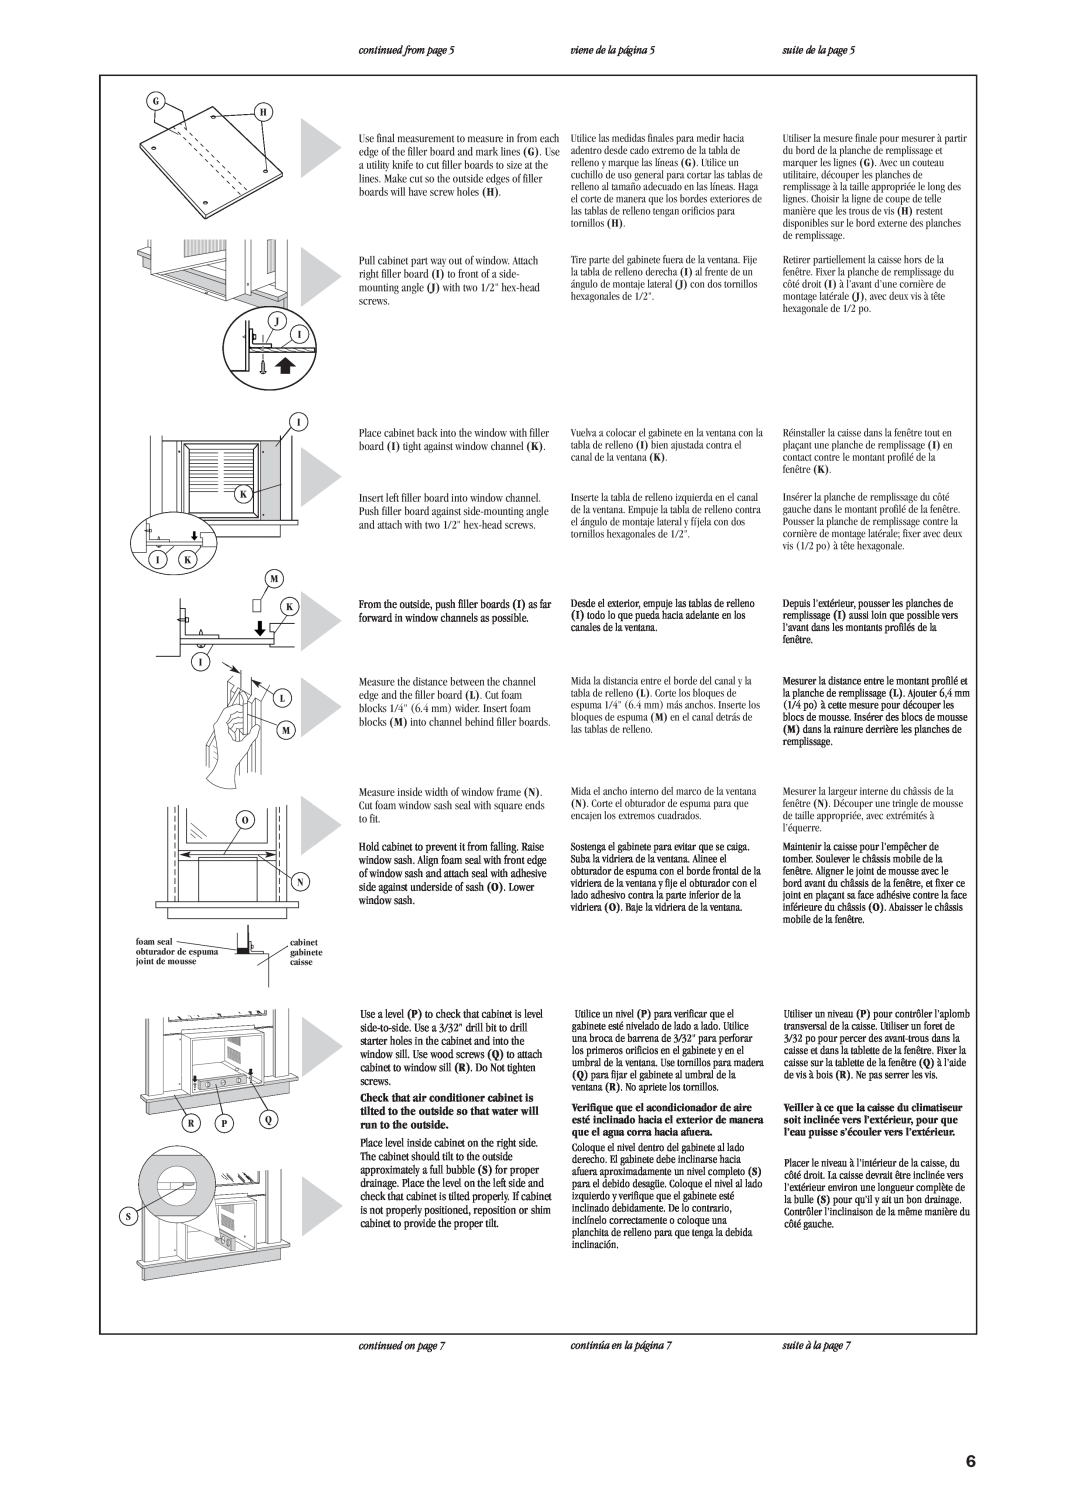 Whirlpool ACQ152XK0 screws, cabinet to provide the proper tilt, continued from page, viene de la página, suite de la page 